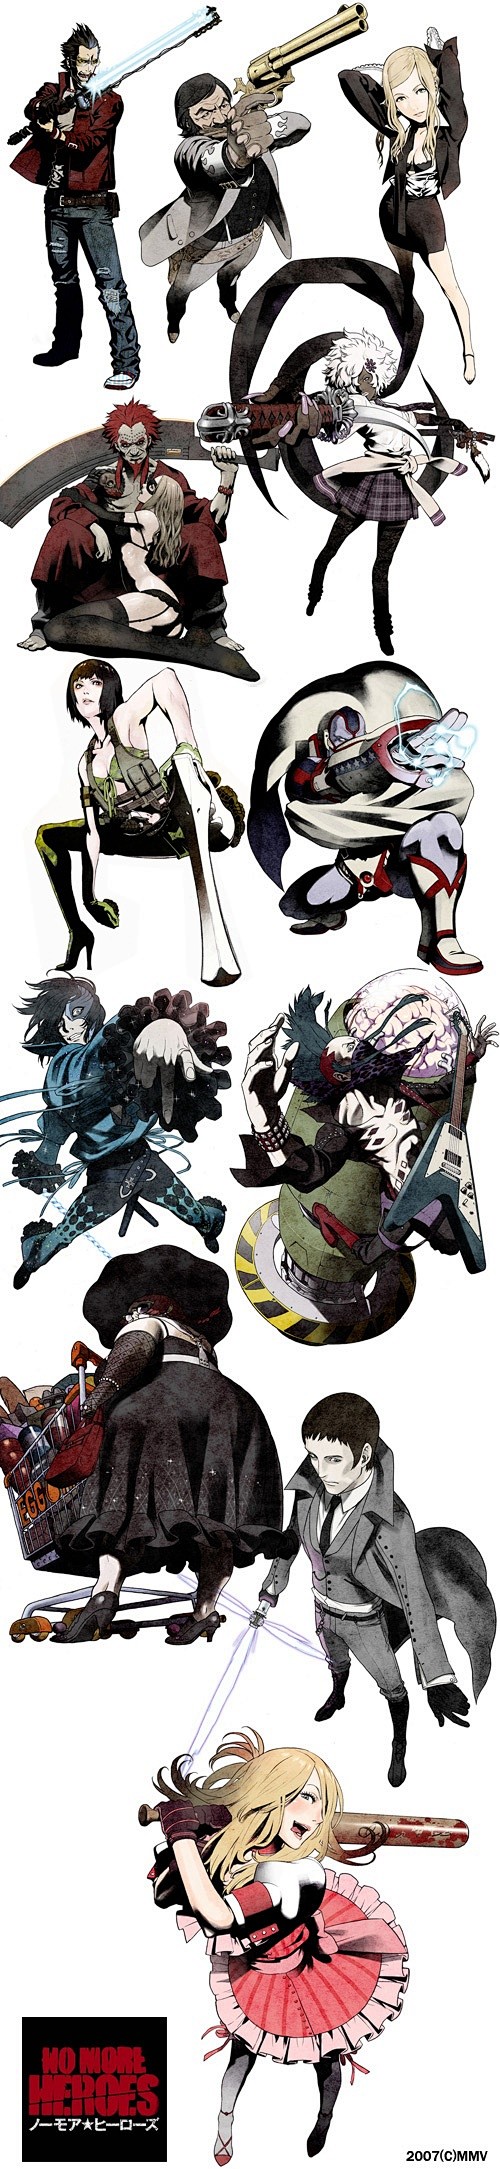 characters by kozaki...